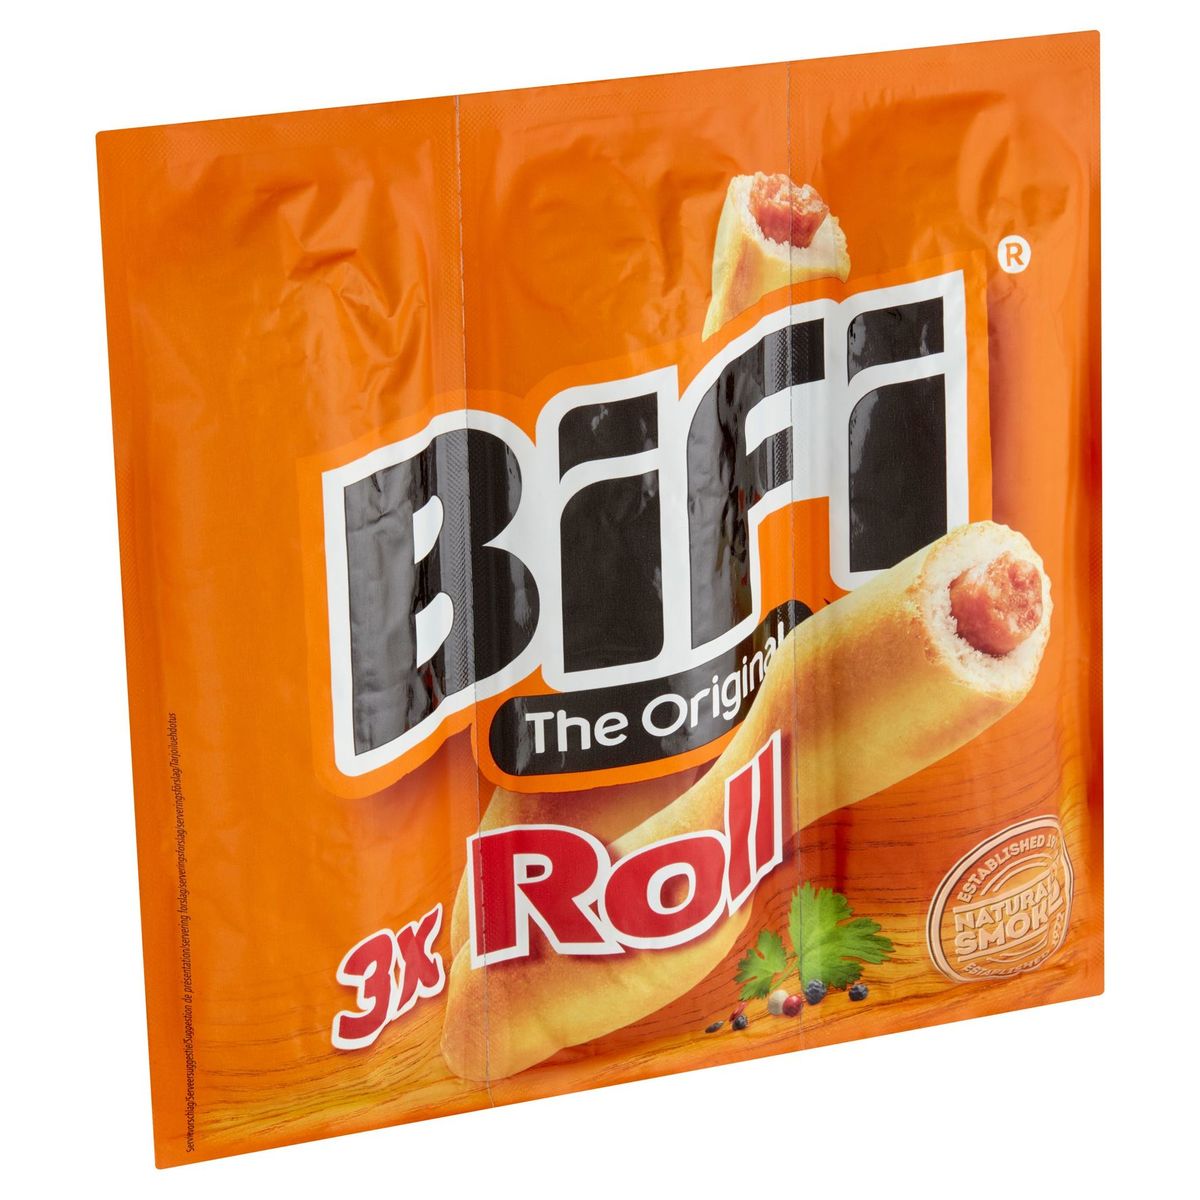 BiFi The Original Roll 3 x 45 g